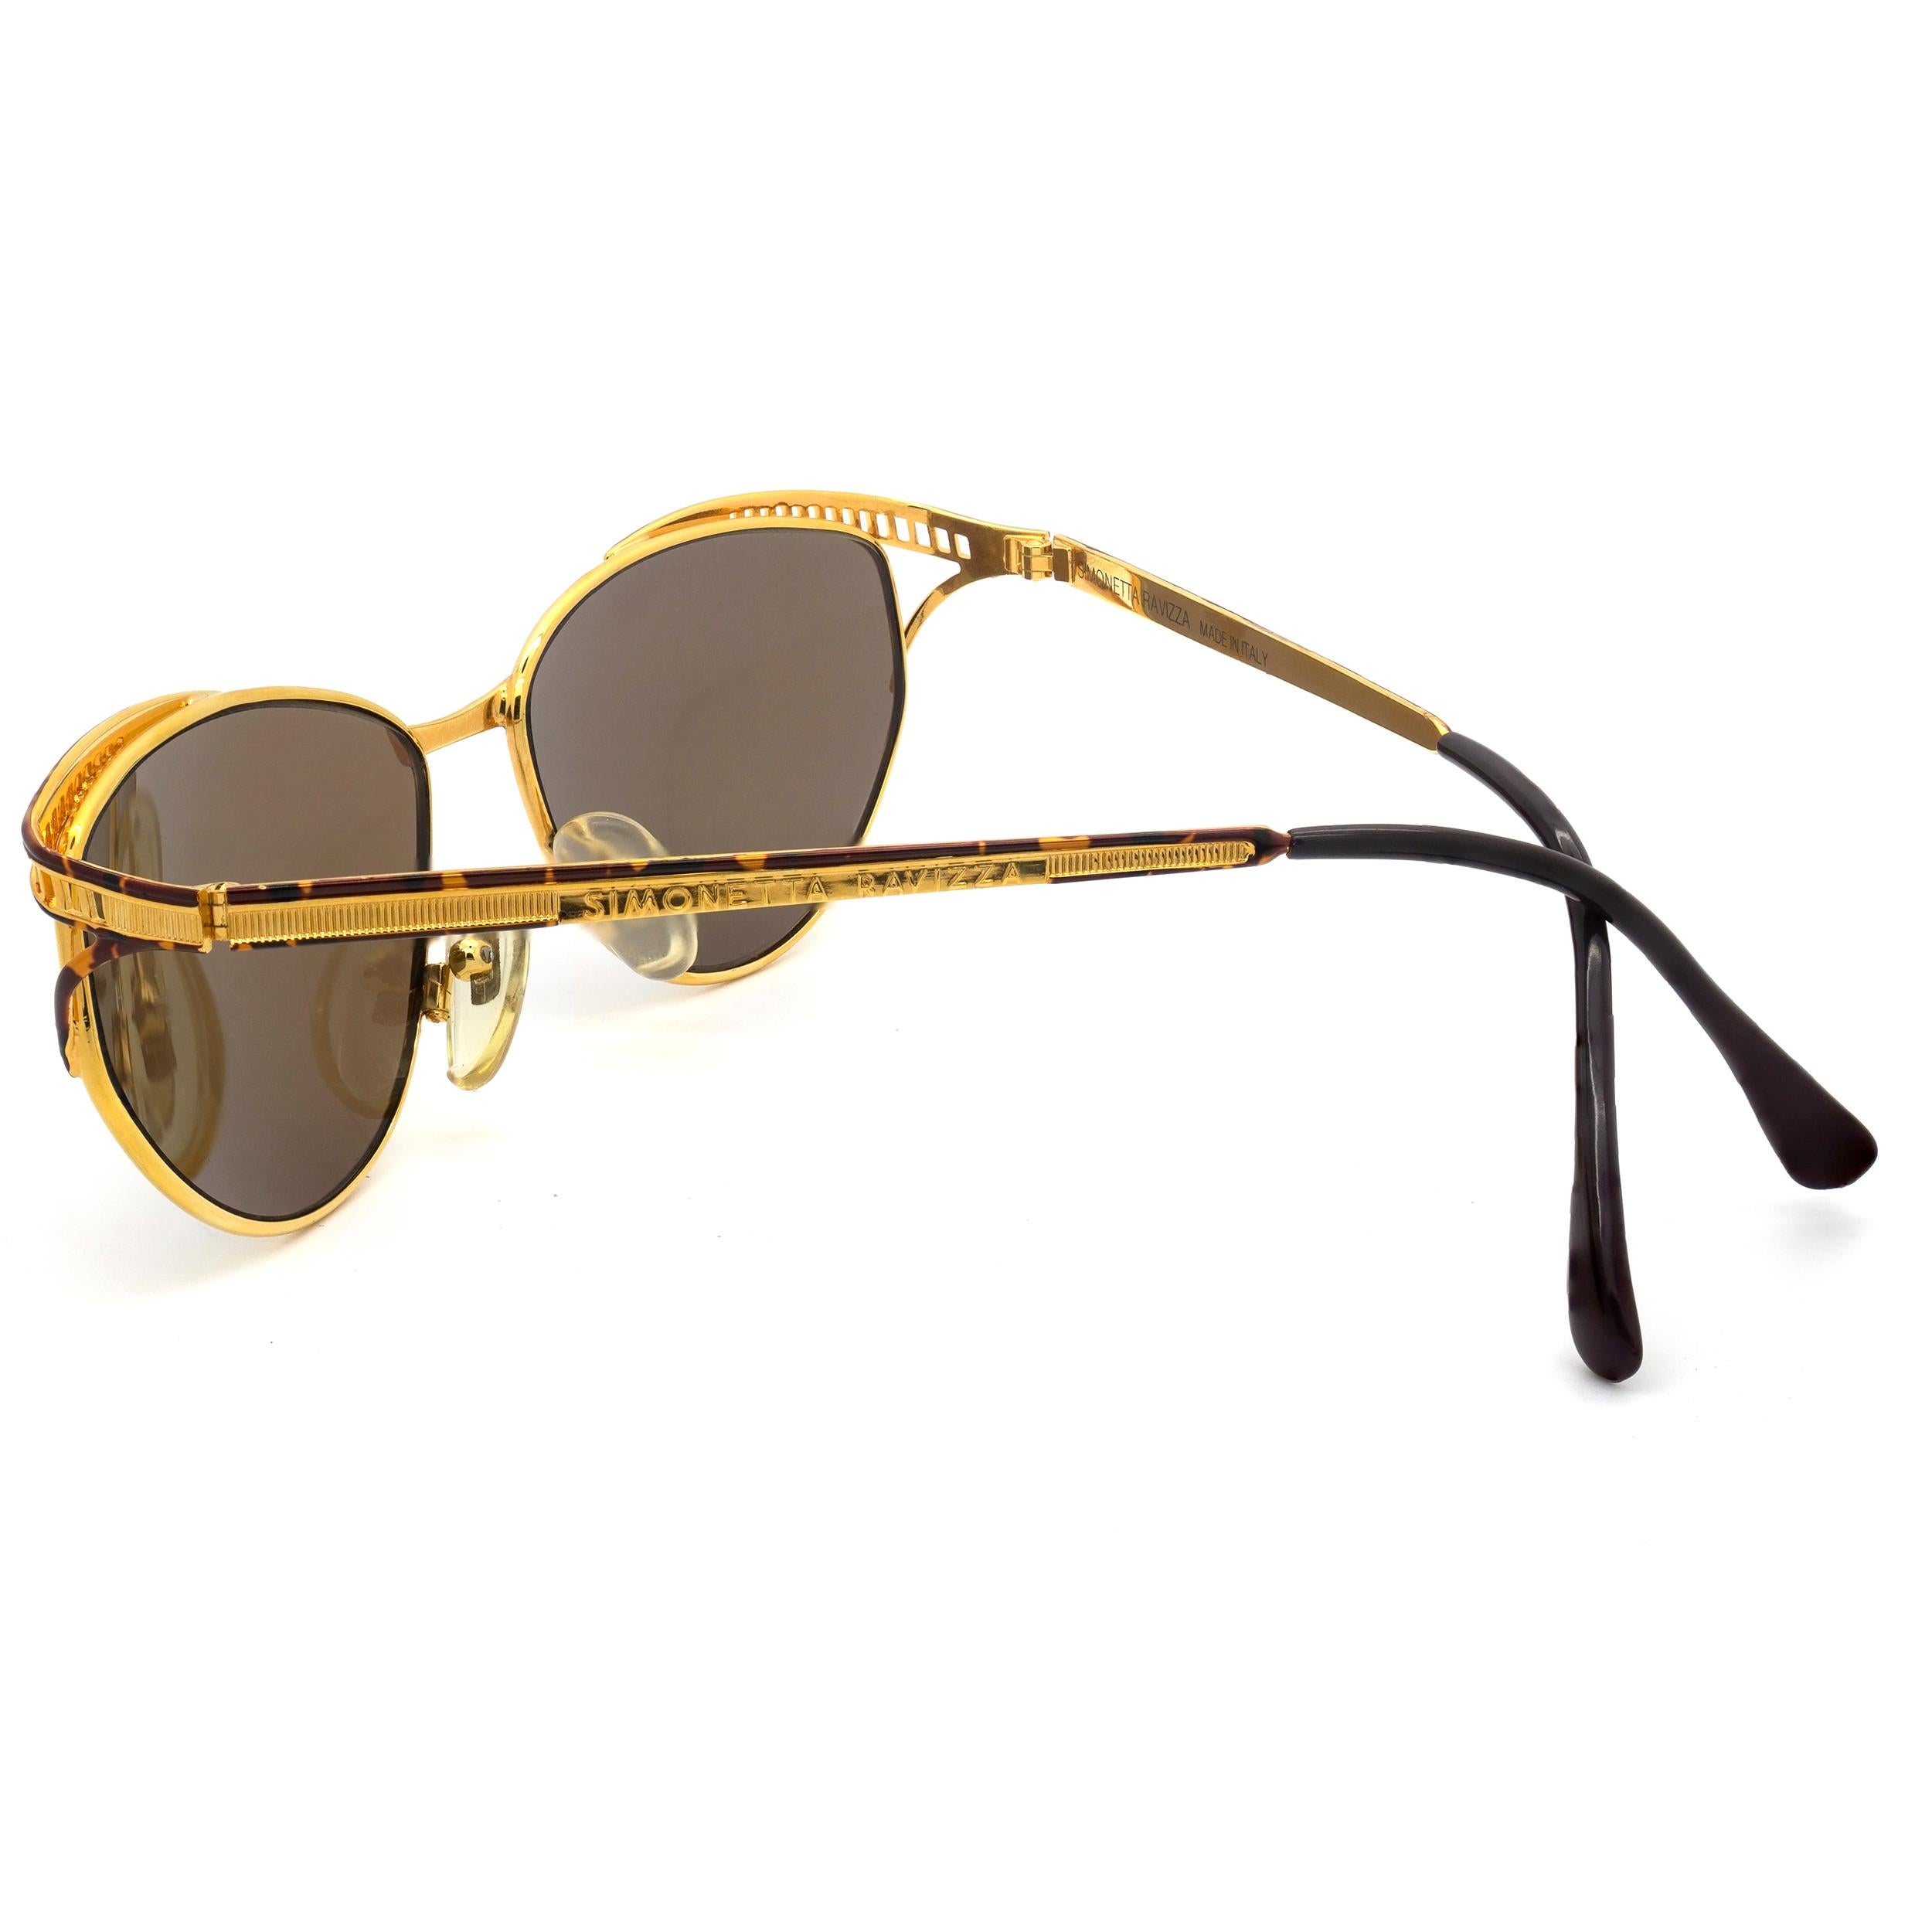 Simonetta Ravizza vintage sunglasses In New Condition For Sale In Santa Clarita, CA